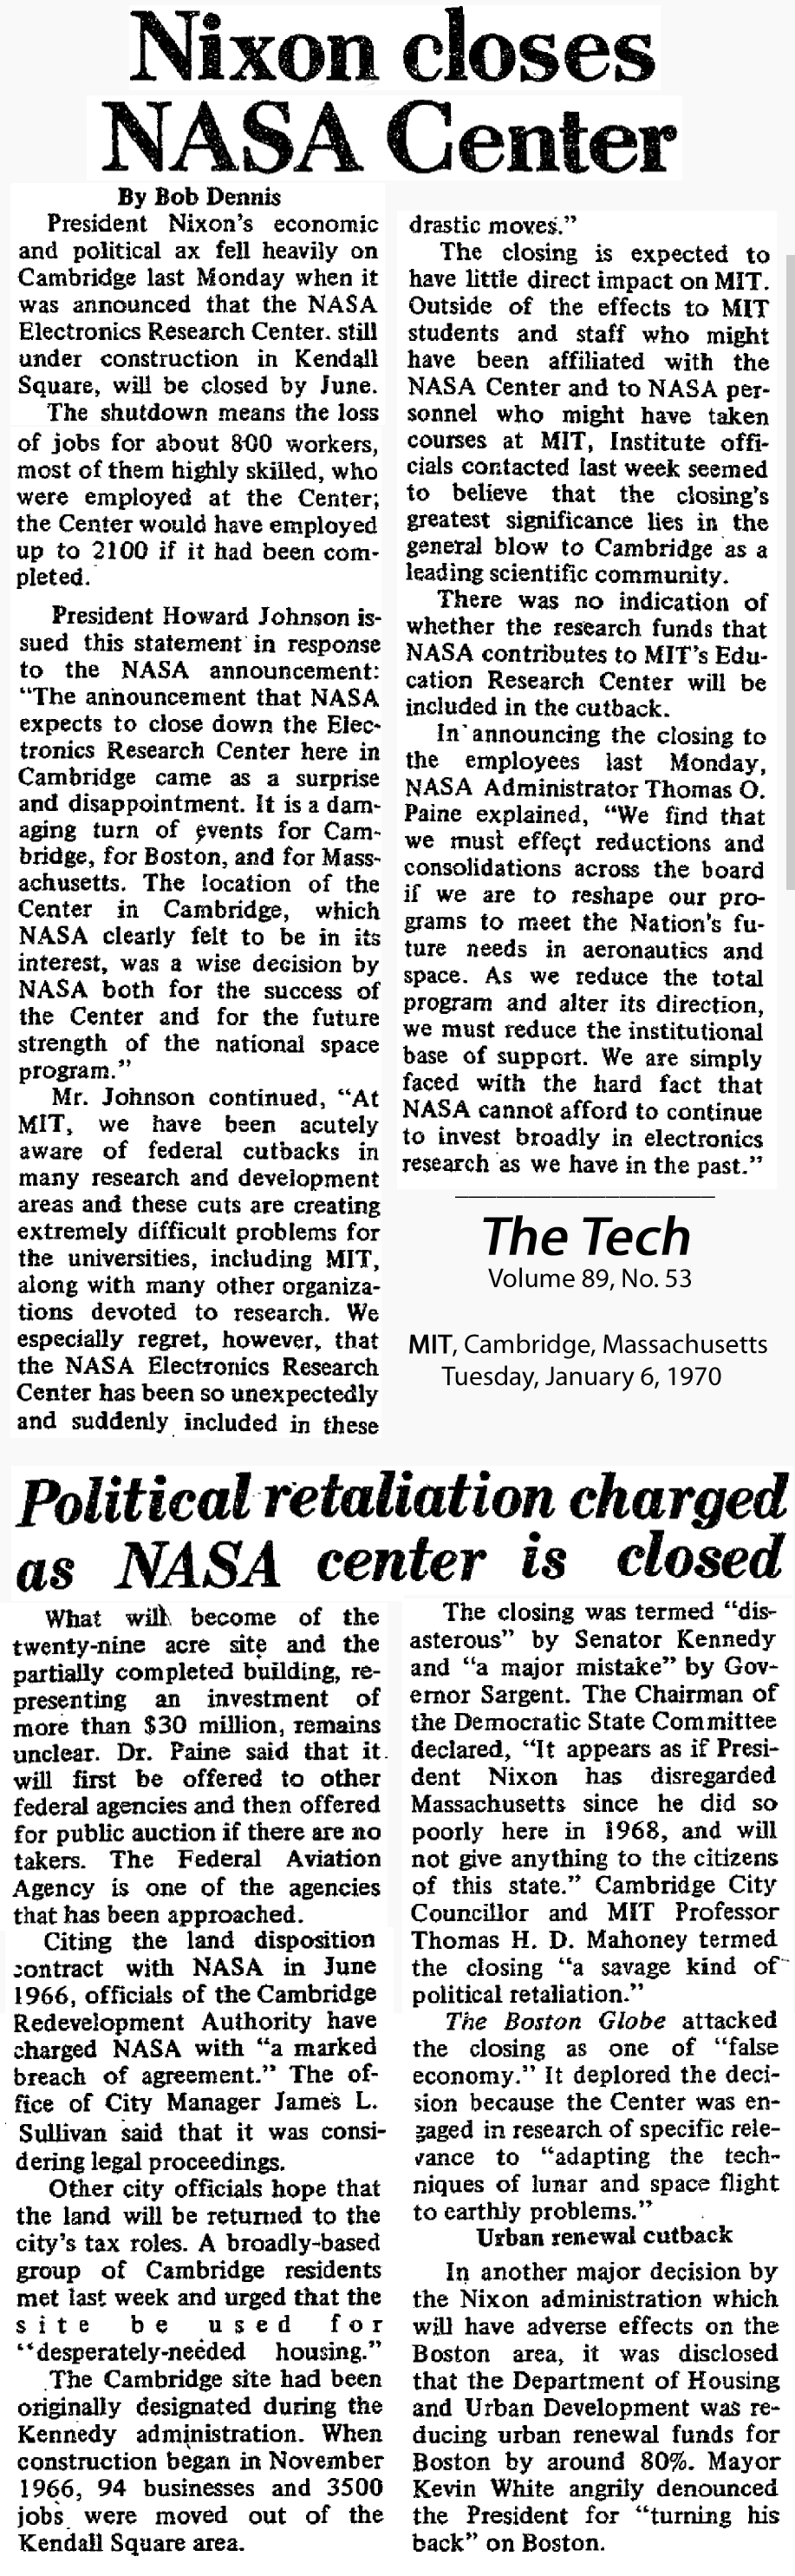 The Tech Jan 6 1970